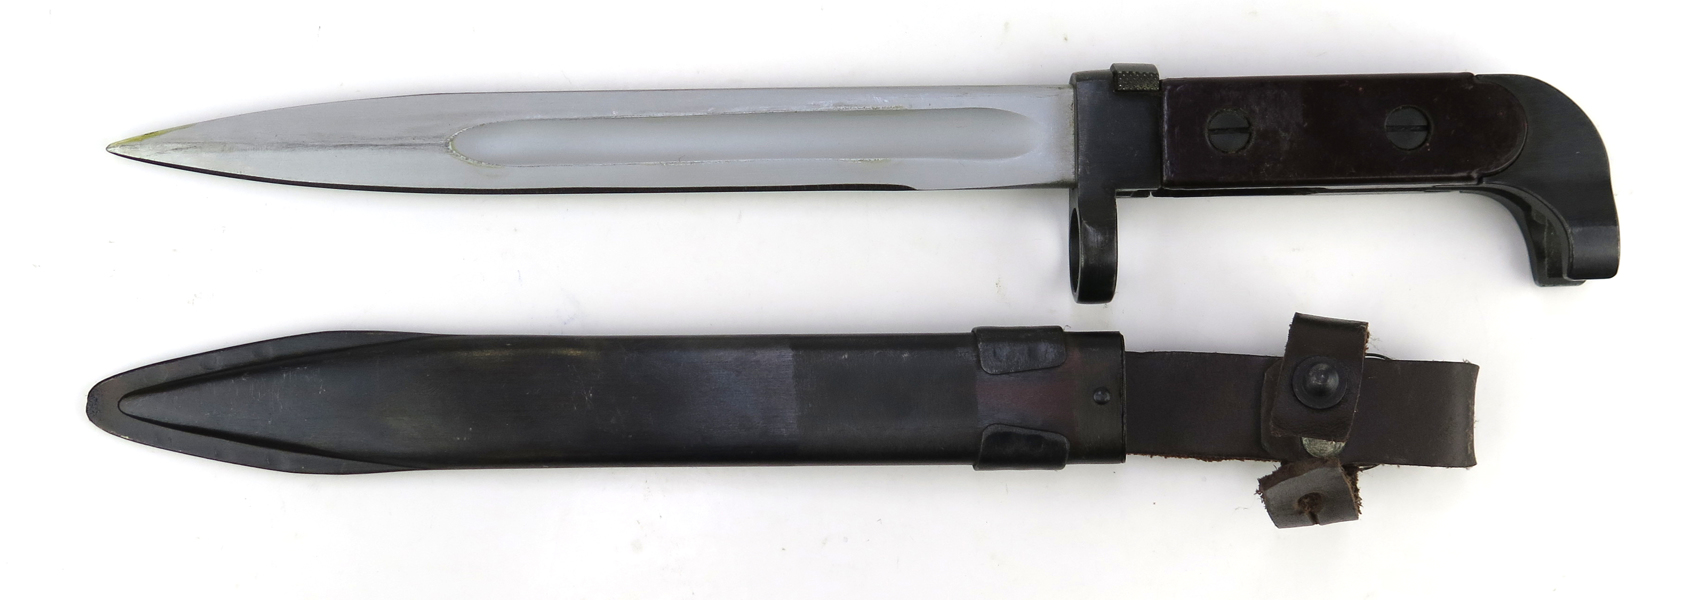 Knivbajonett i balja, Ryssland M/1947, för Automatkarbin M/1947 (AK47 Kalashnikov), _18970a_8da39a77ea37b4f_lg.jpeg